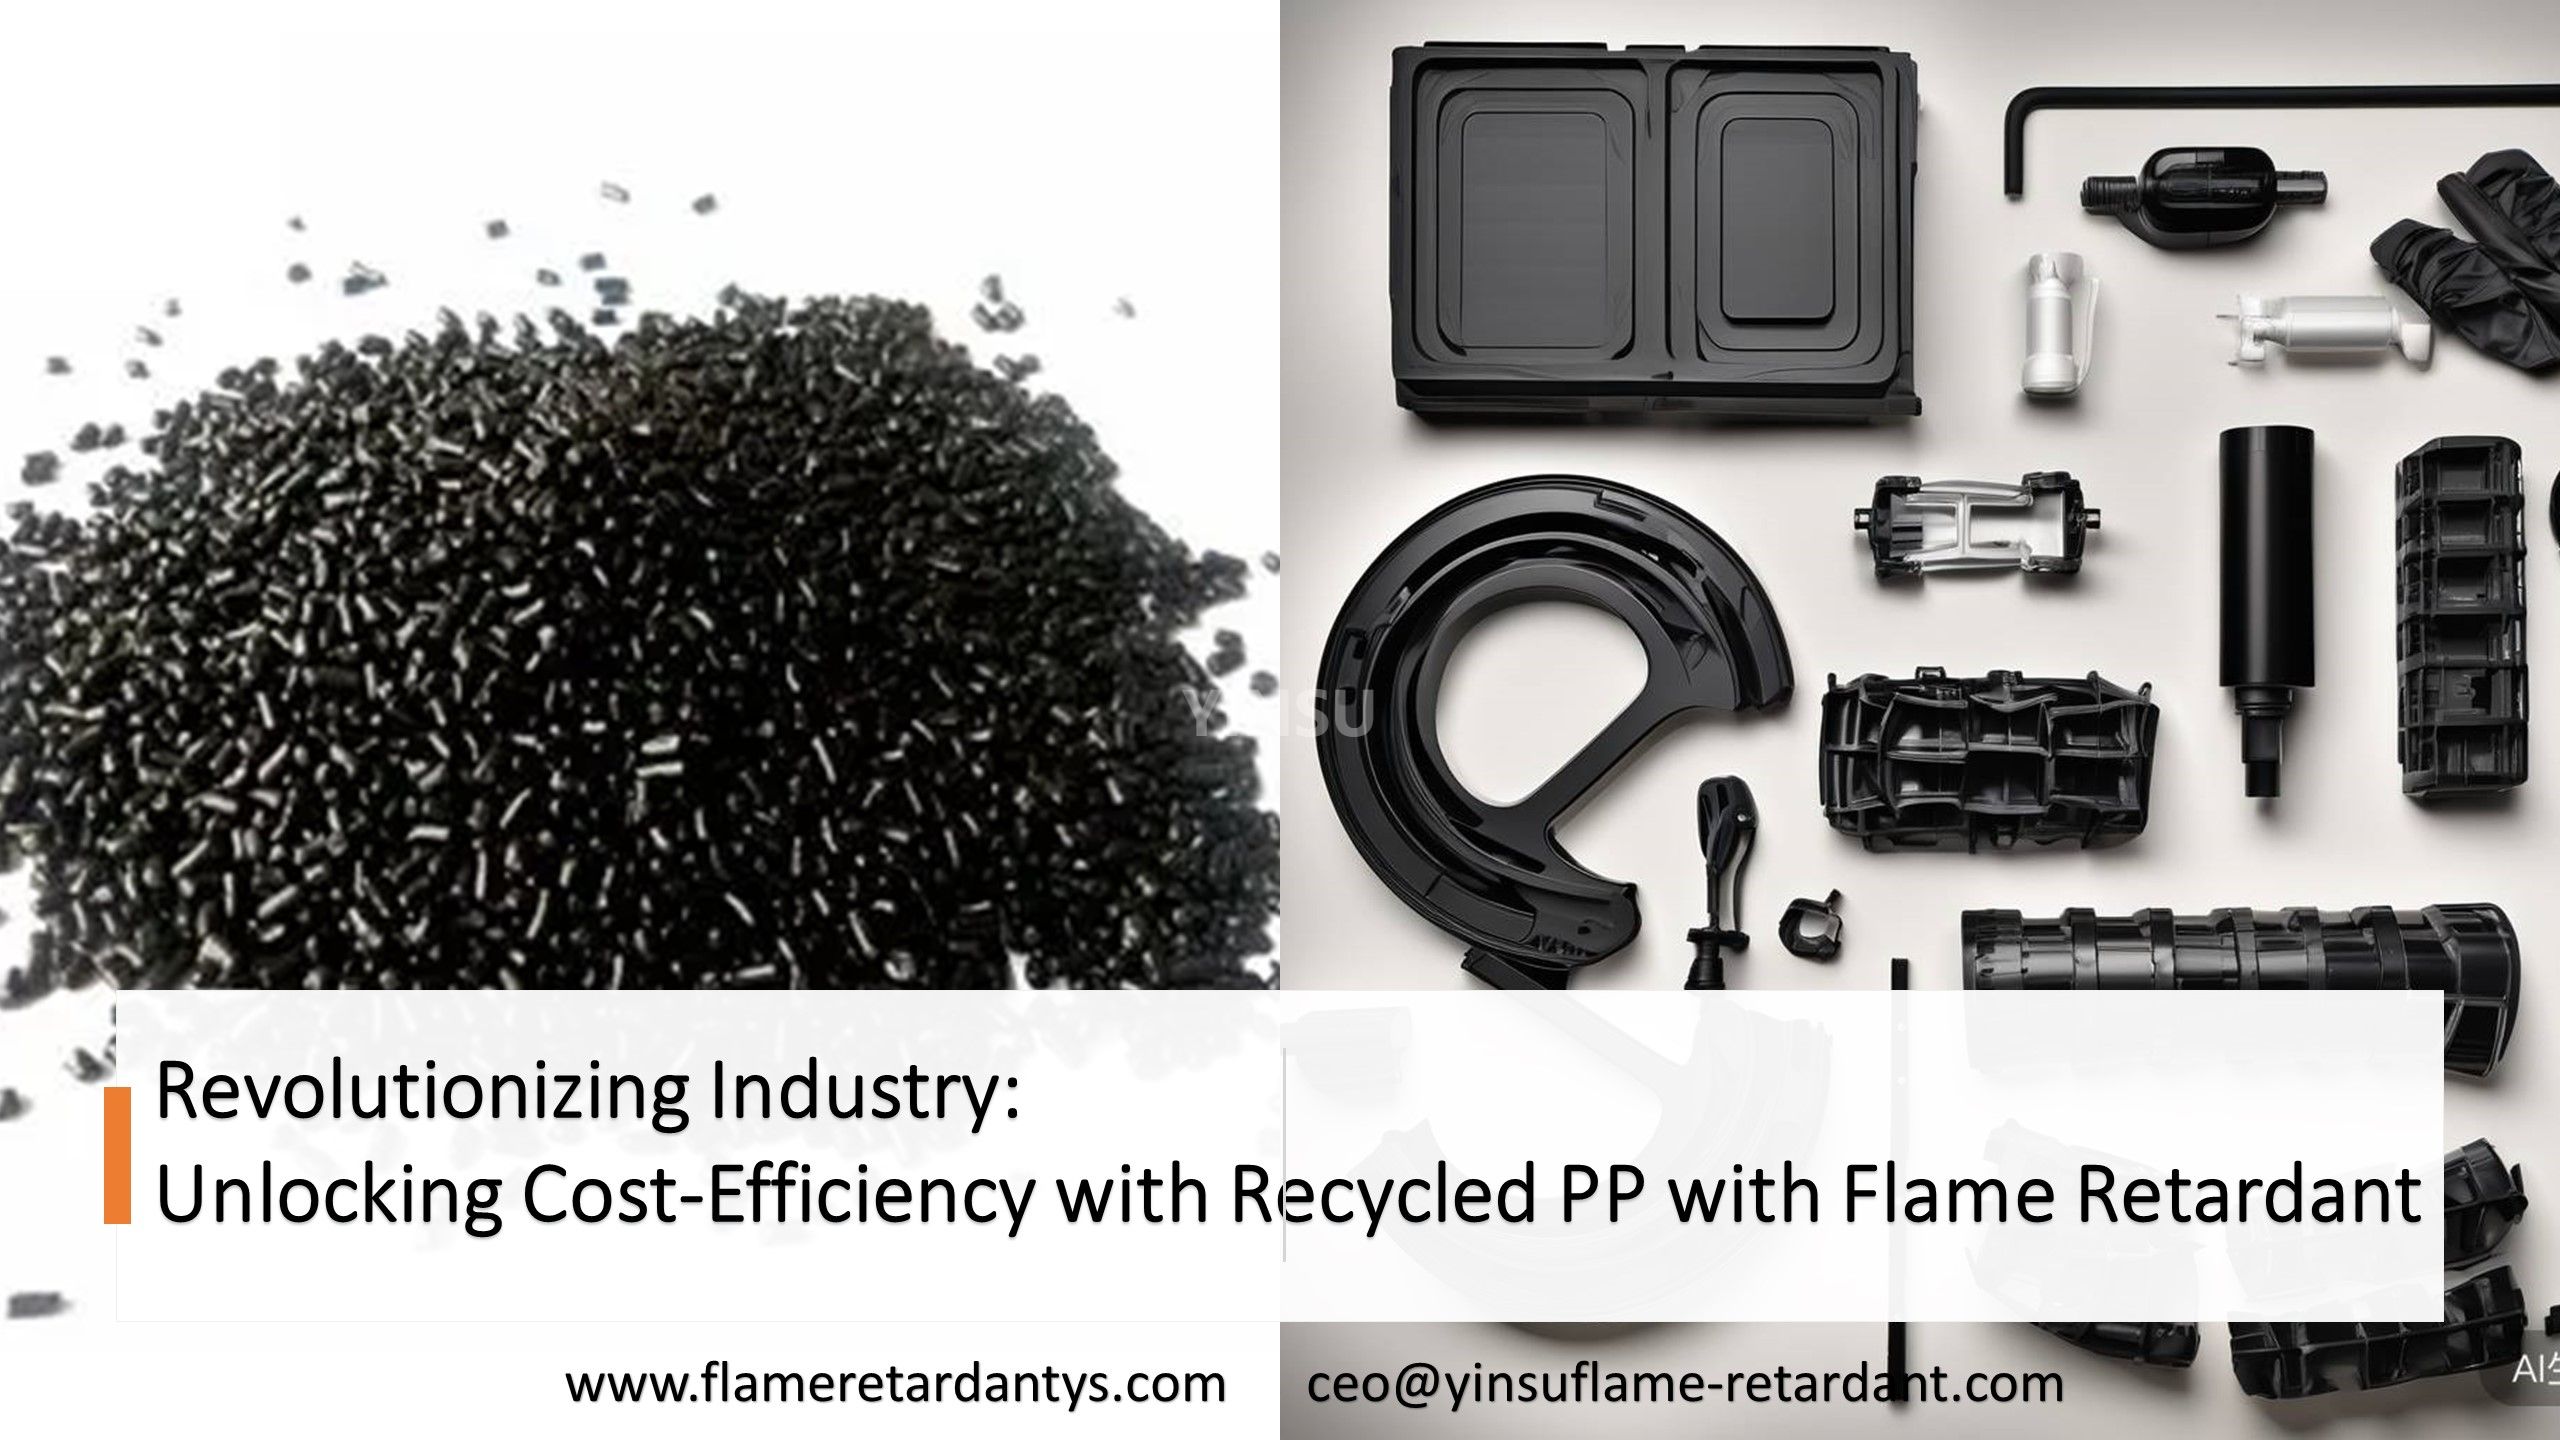 Revolucionando la industria: desbloqueando la rentabilidad con PP reciclado con retardante de llama